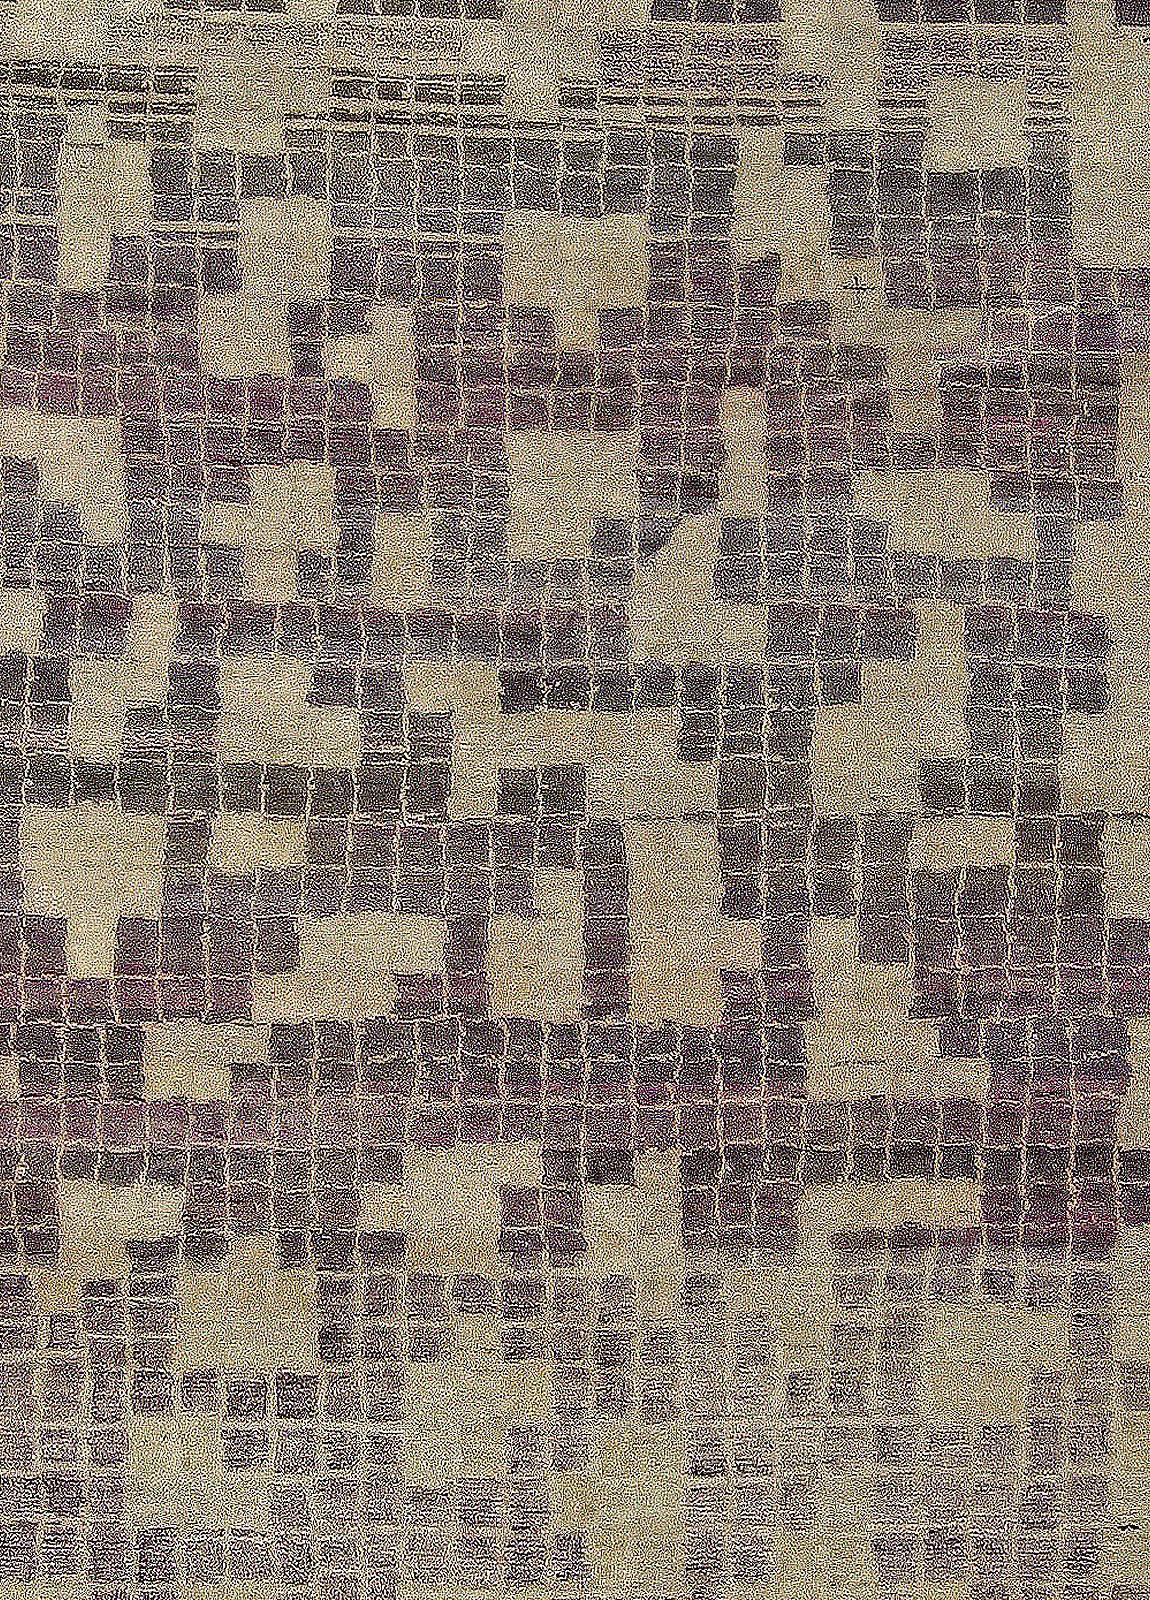 Modern geometric pool tile handmade wool rug by Doris Leslie Blau.
Size: 11'7